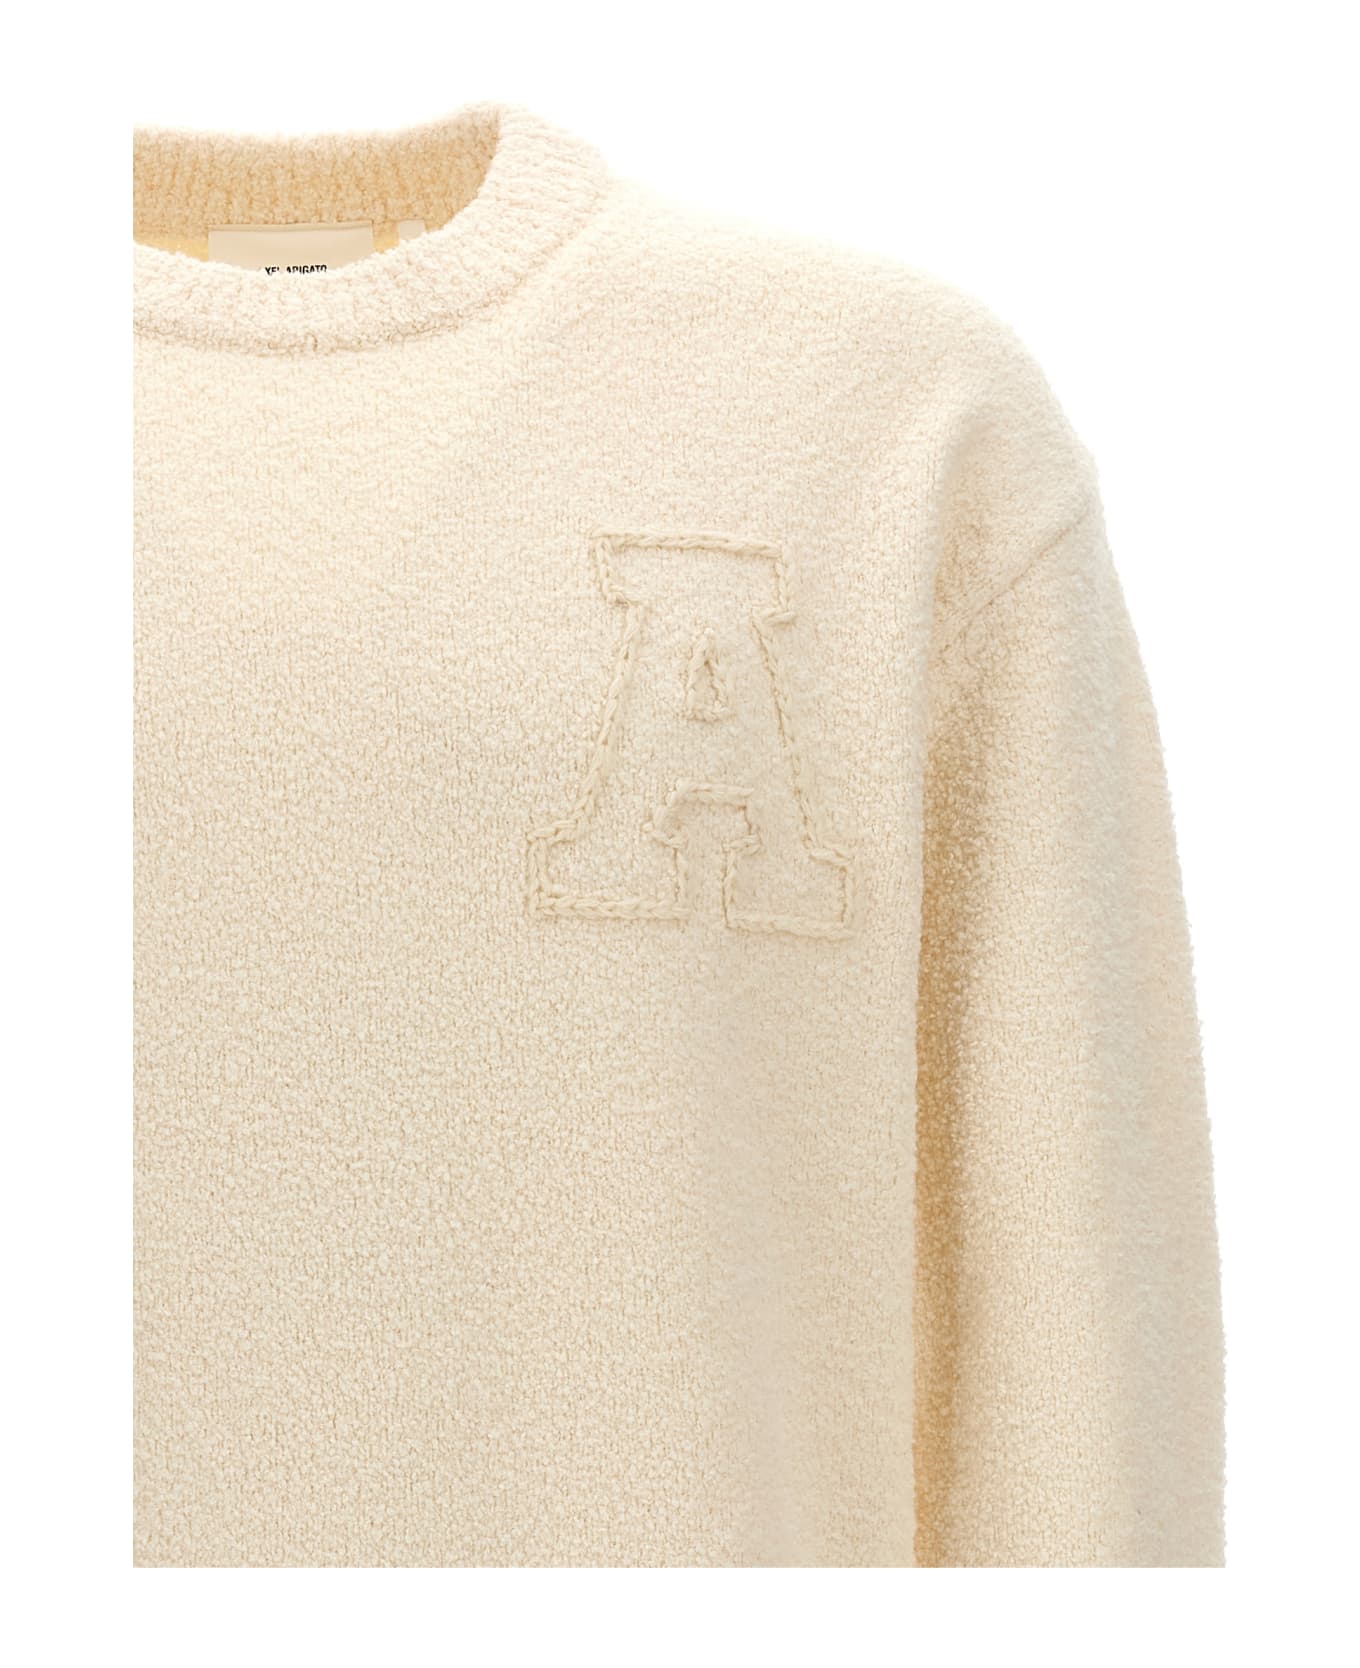 Axel Arigato 'radar' Sweater - White